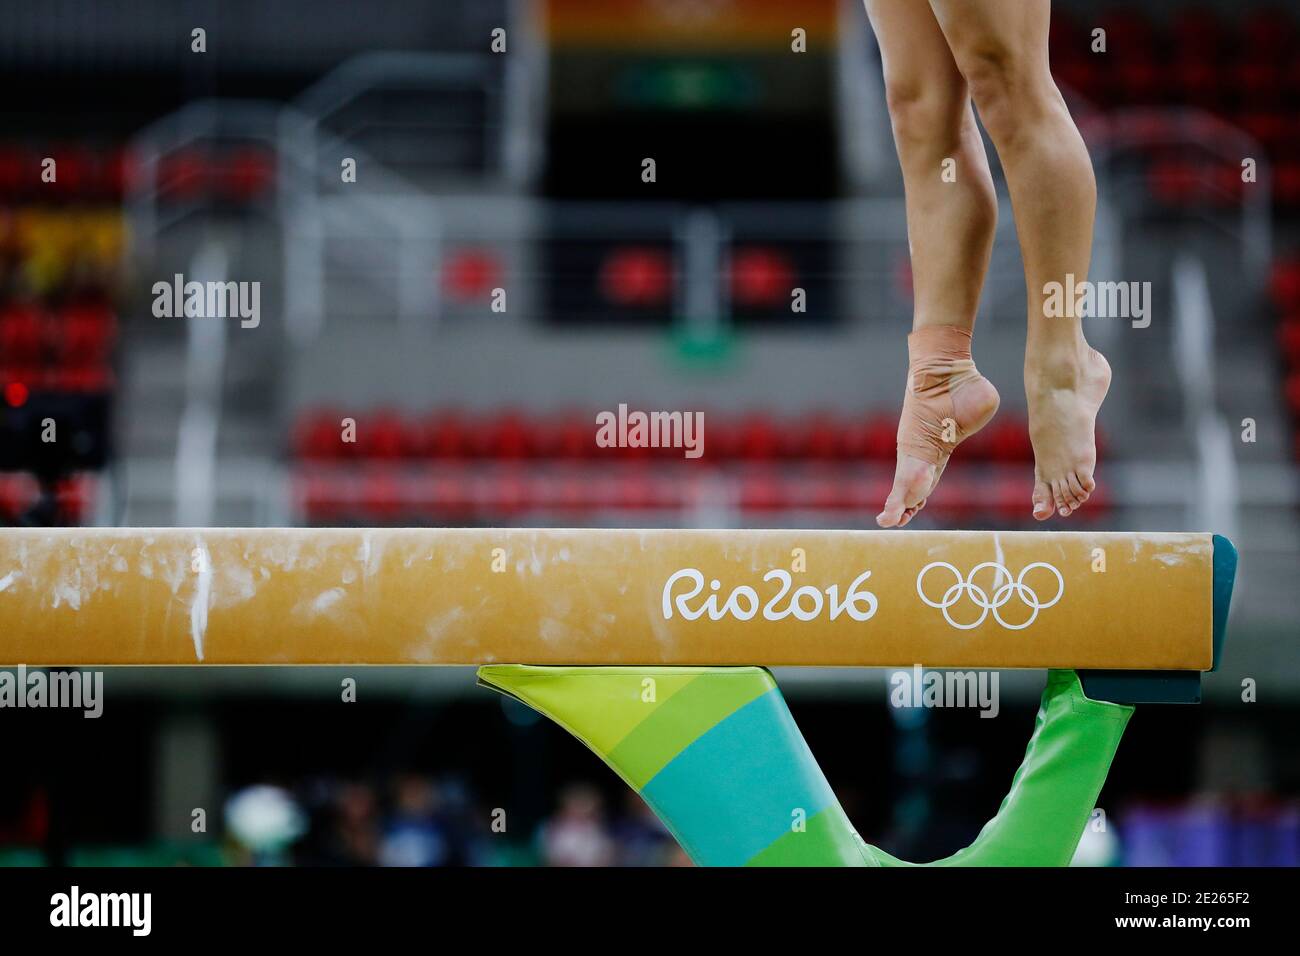 Concours Balance Beam à la gymnastique artistique des Jeux Olympiques d'été de Rio 2016. Pieds d'athlète pendant une séance d'entraînement. Banque D'Images